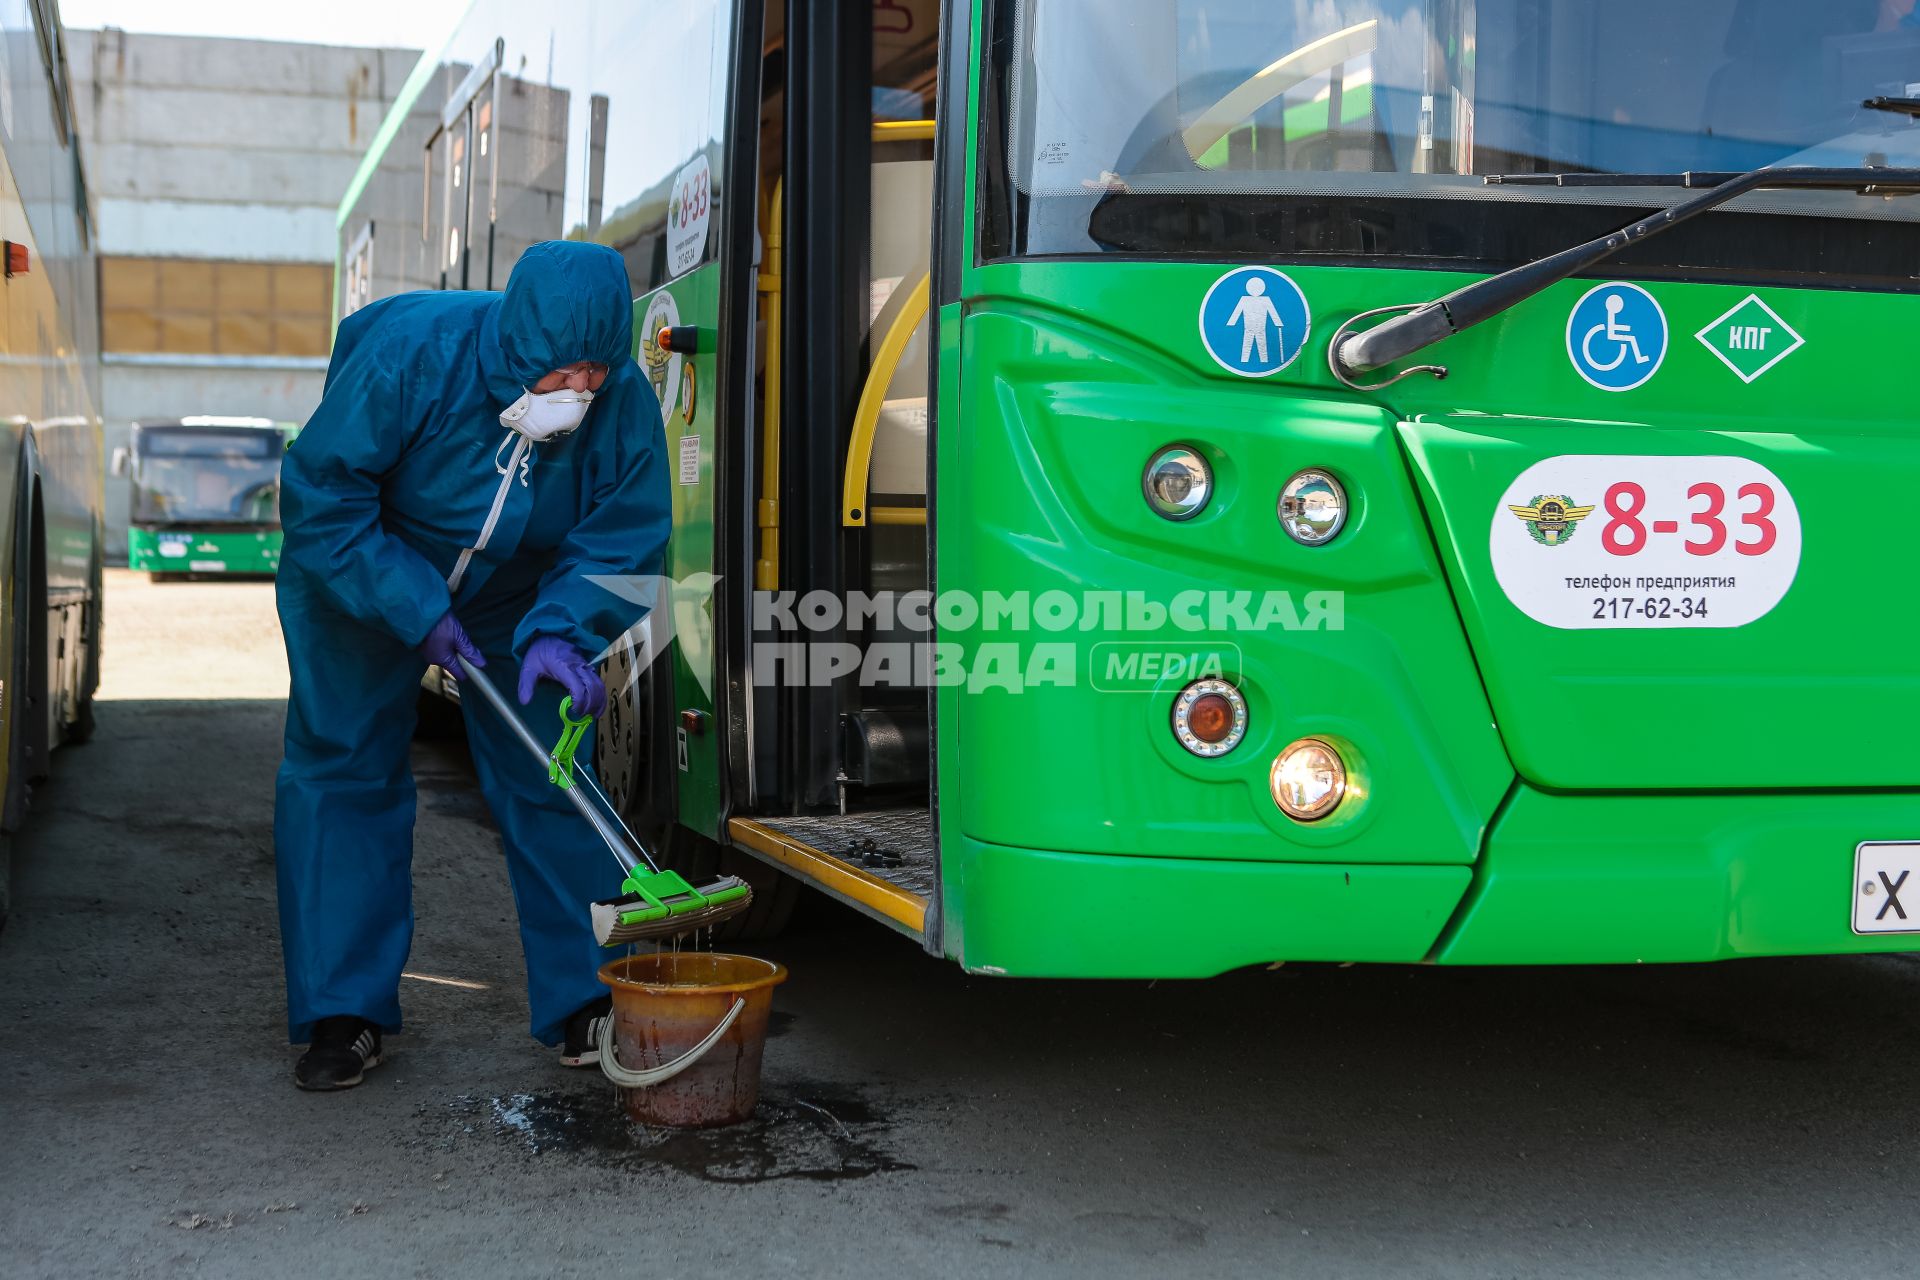 Челябинск. Сотрудница санитарной службы производит дезинфекцию автобуса.